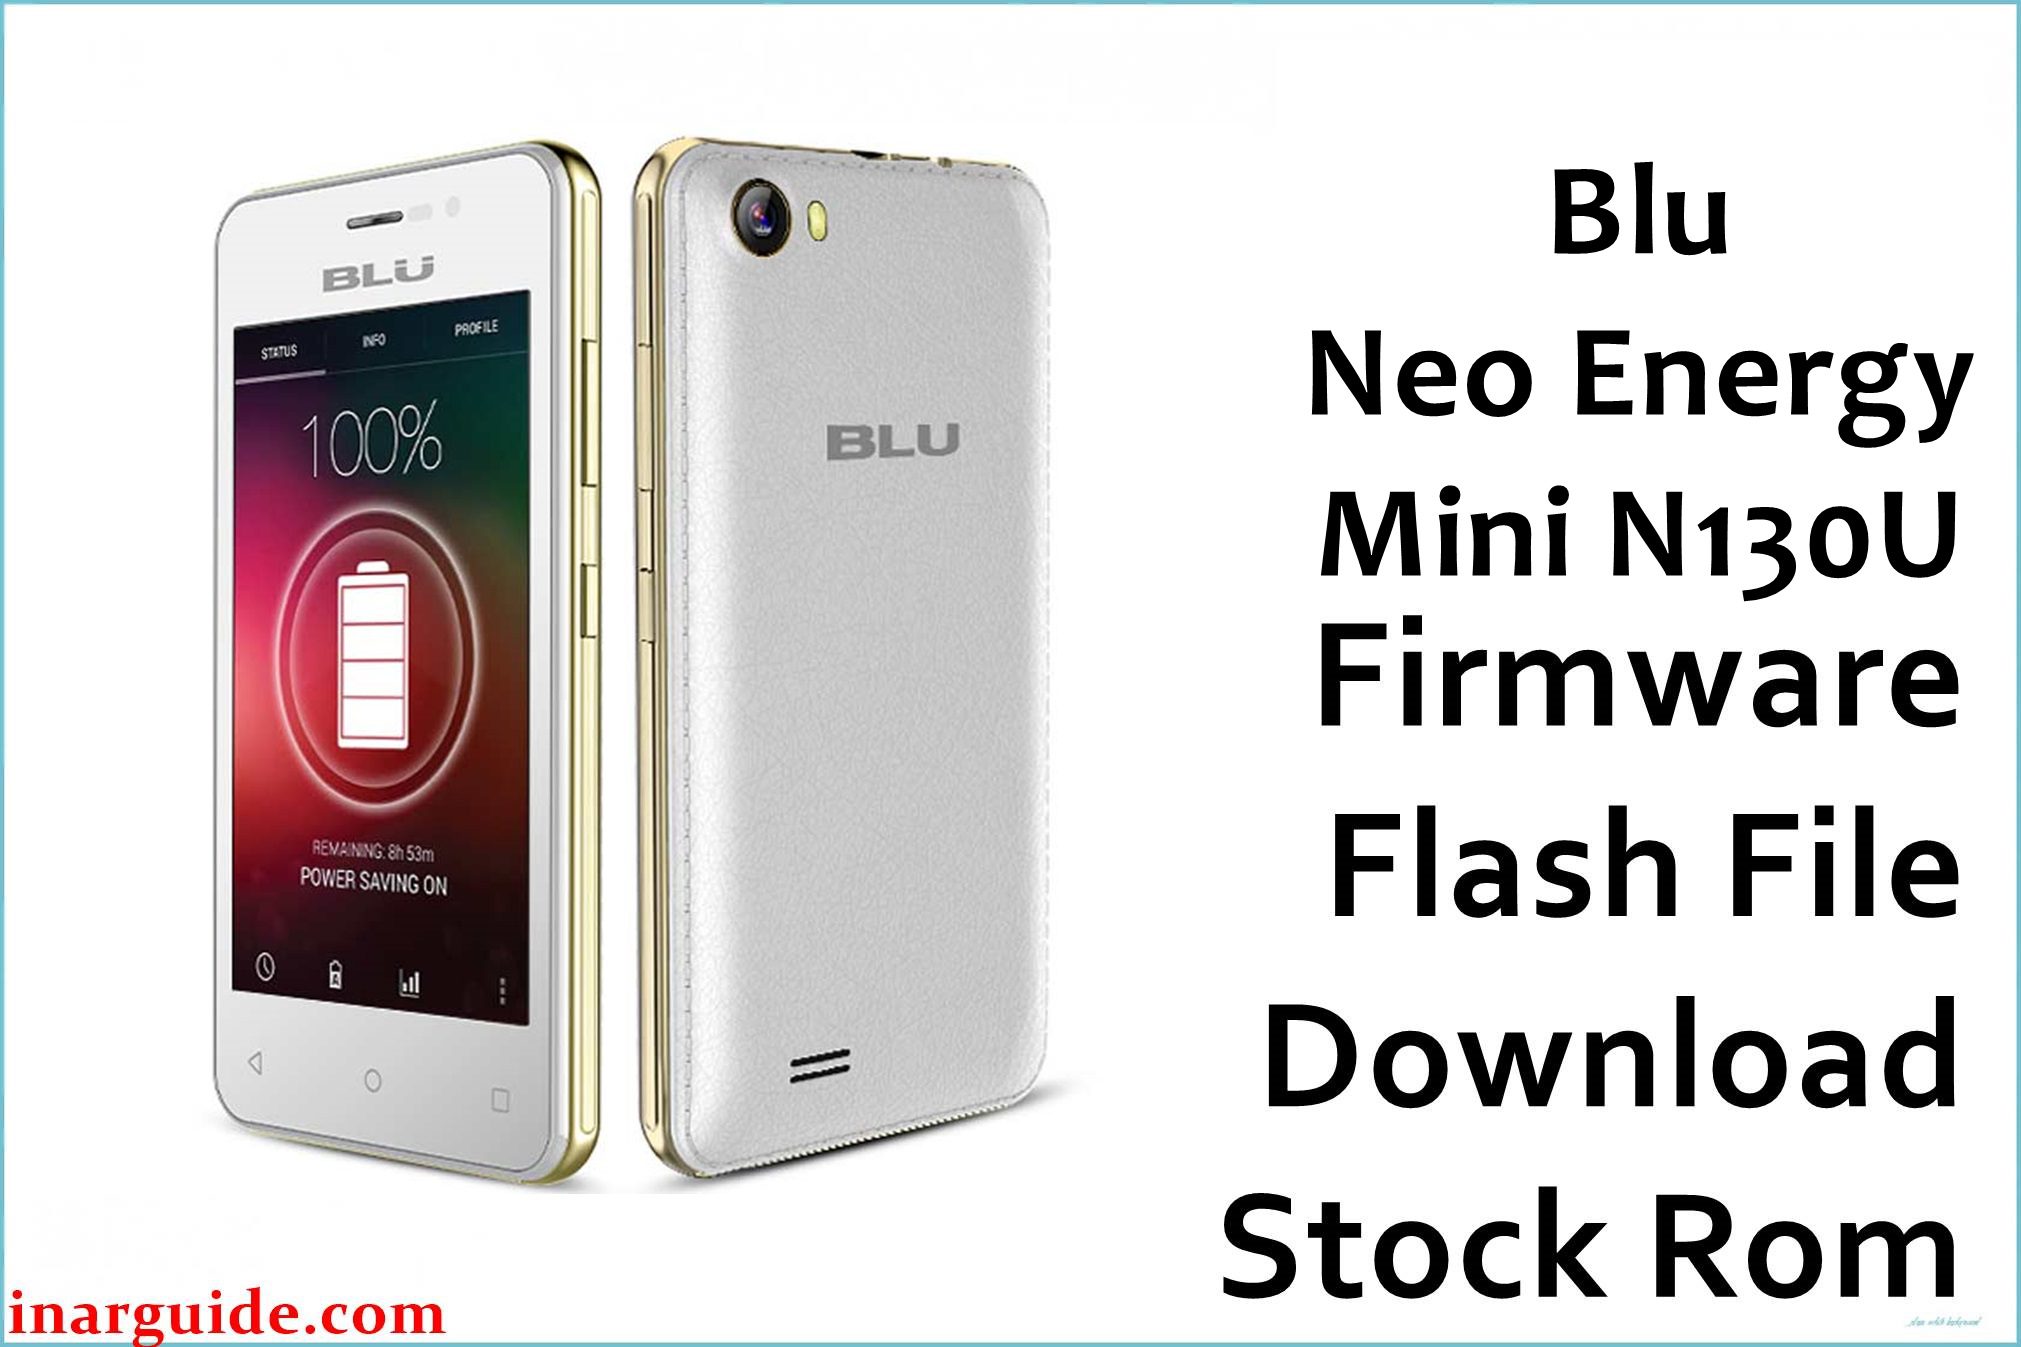 Blu Neo Energy Mini N130U